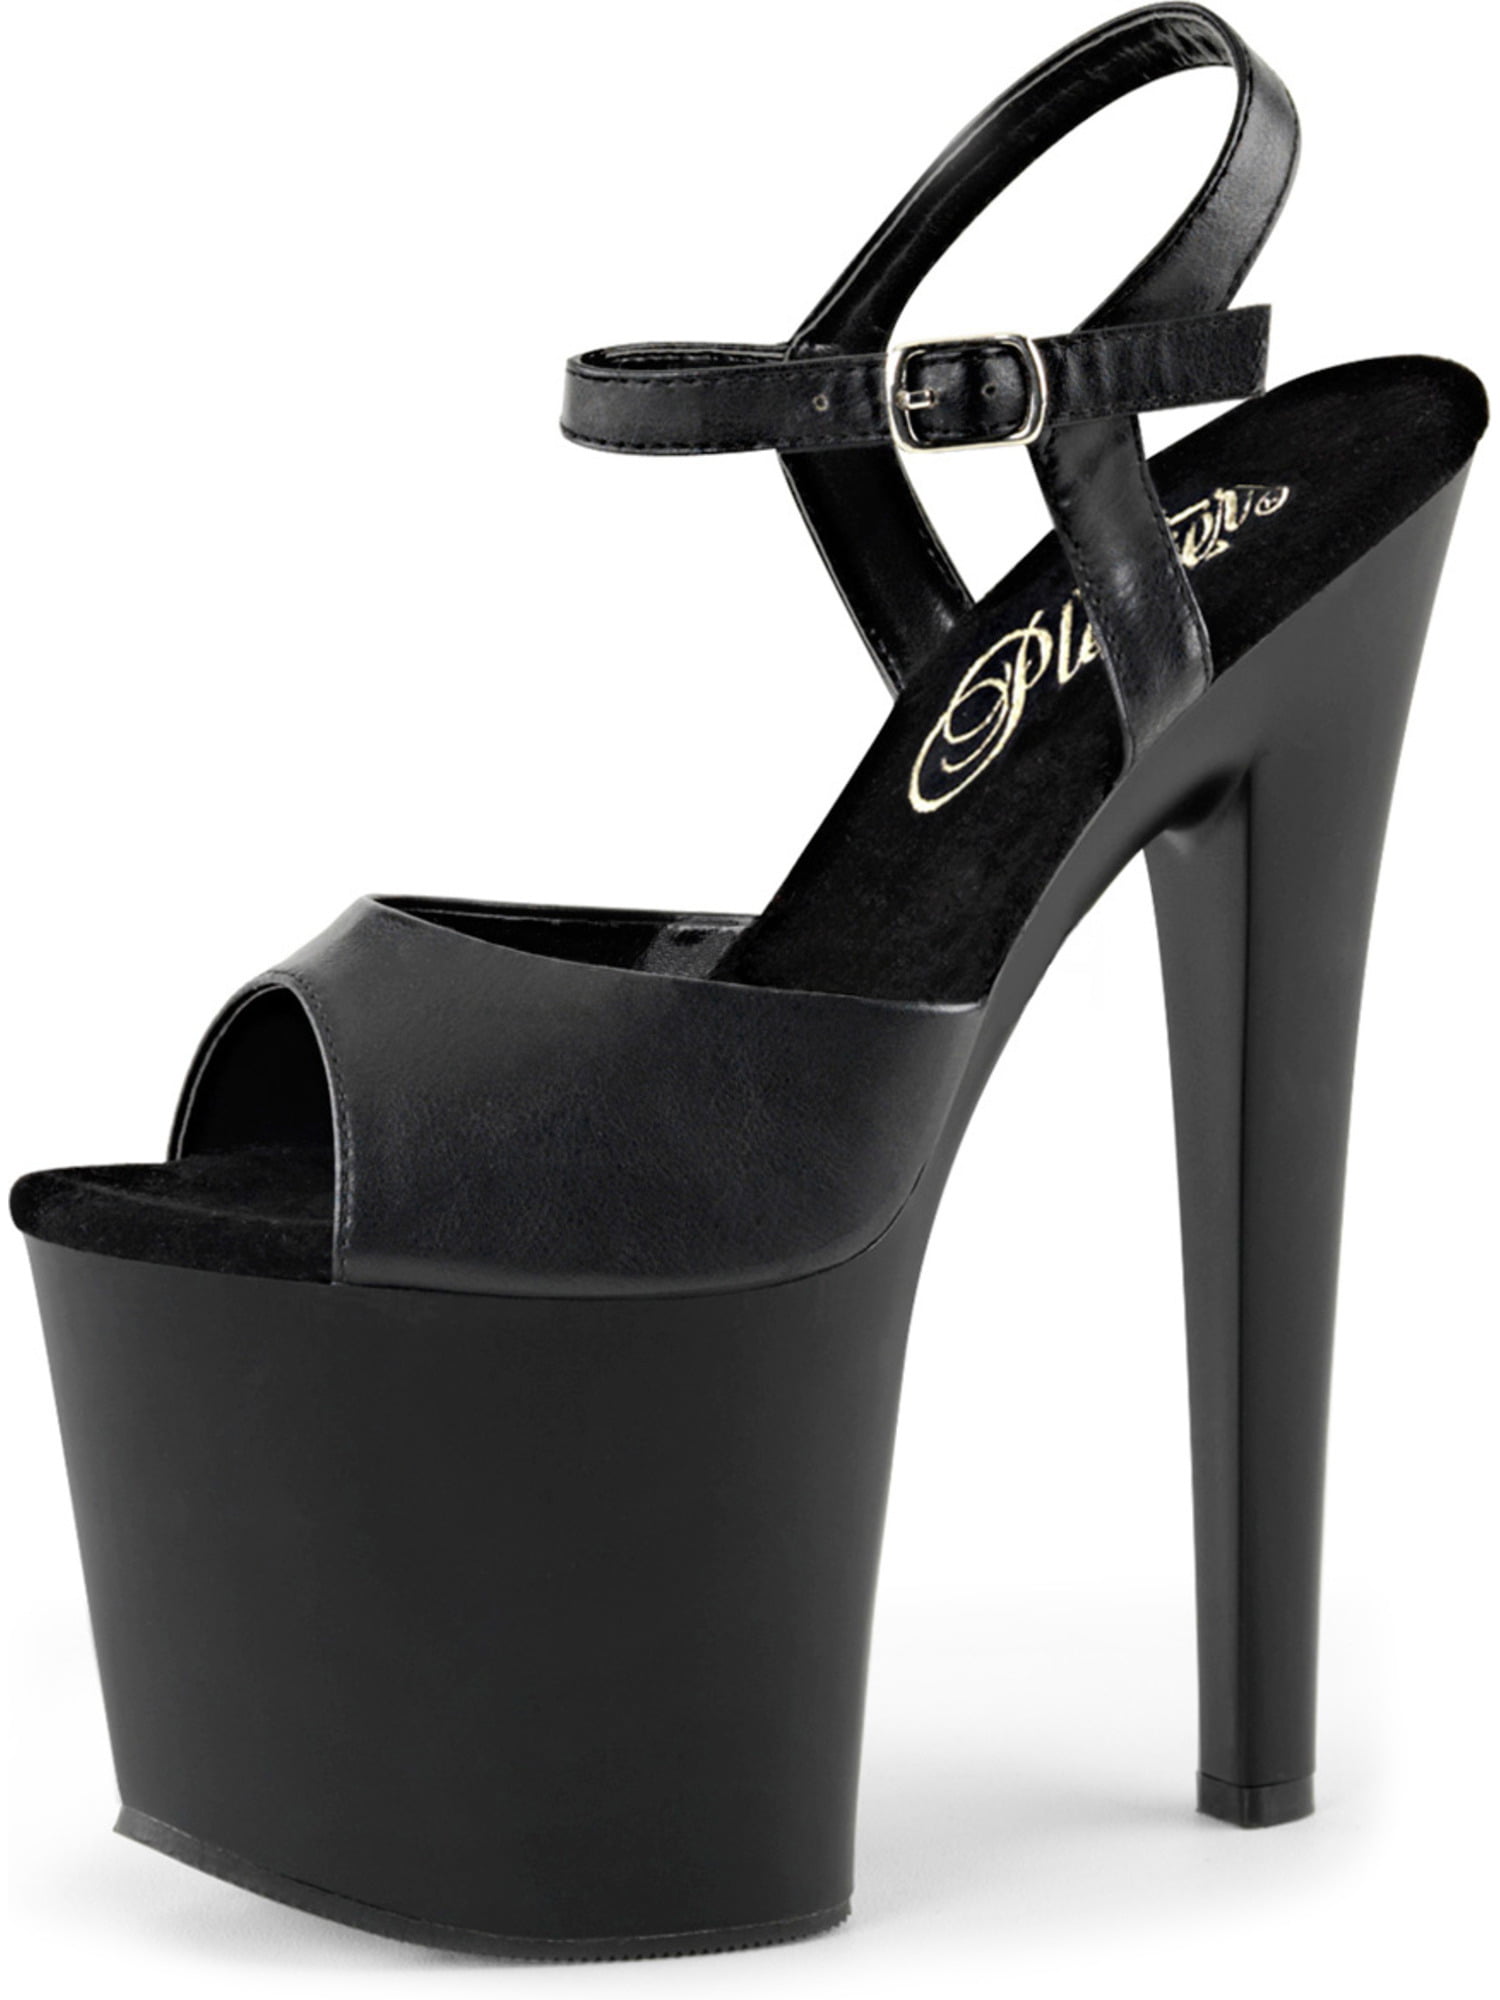 2 inch heel women's shoes